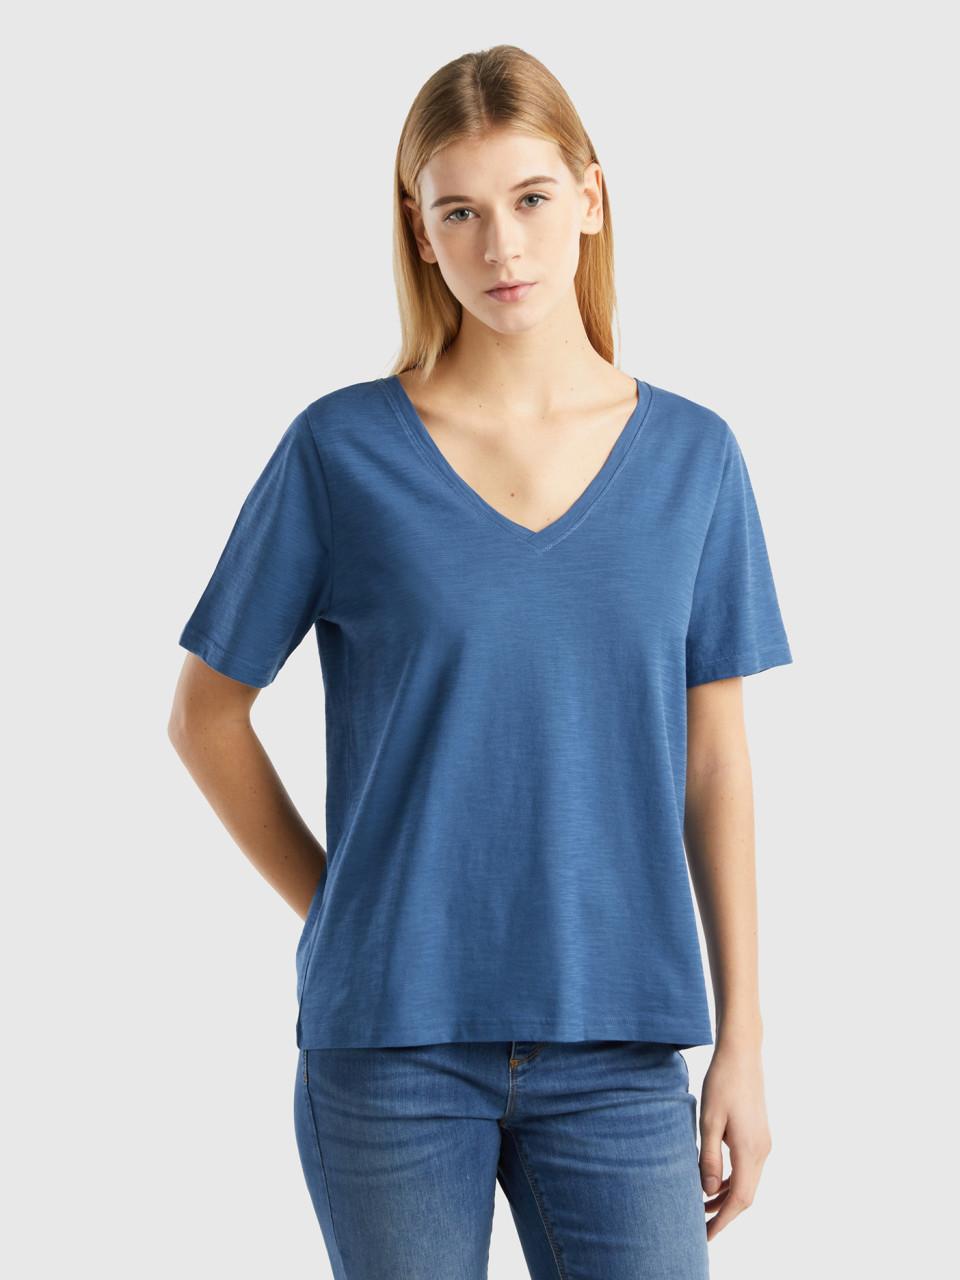 Benetton, Camiseta De Algodón Flameado Con Escote De Pico, Azul Grisáceo, Mujer